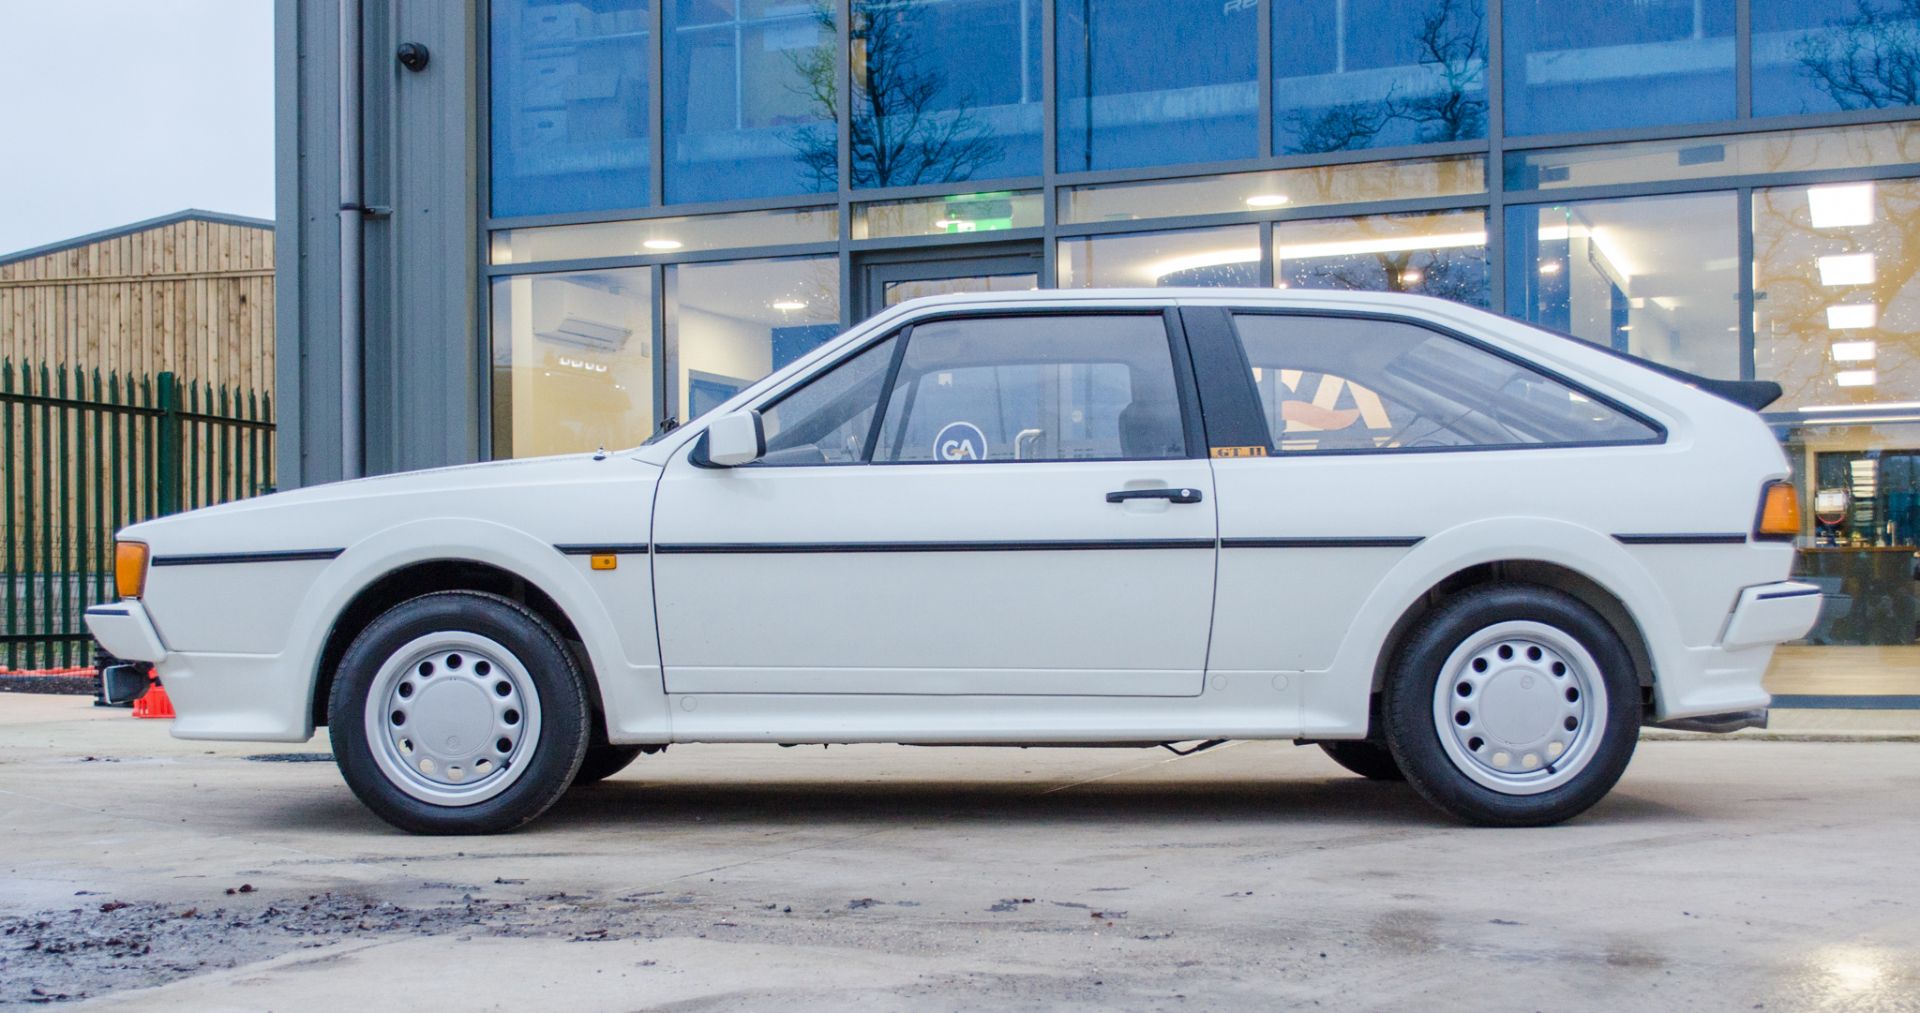 1991 Volkswagen Scirocco GTII 1800cc 3 door coupe - Image 11 of 46